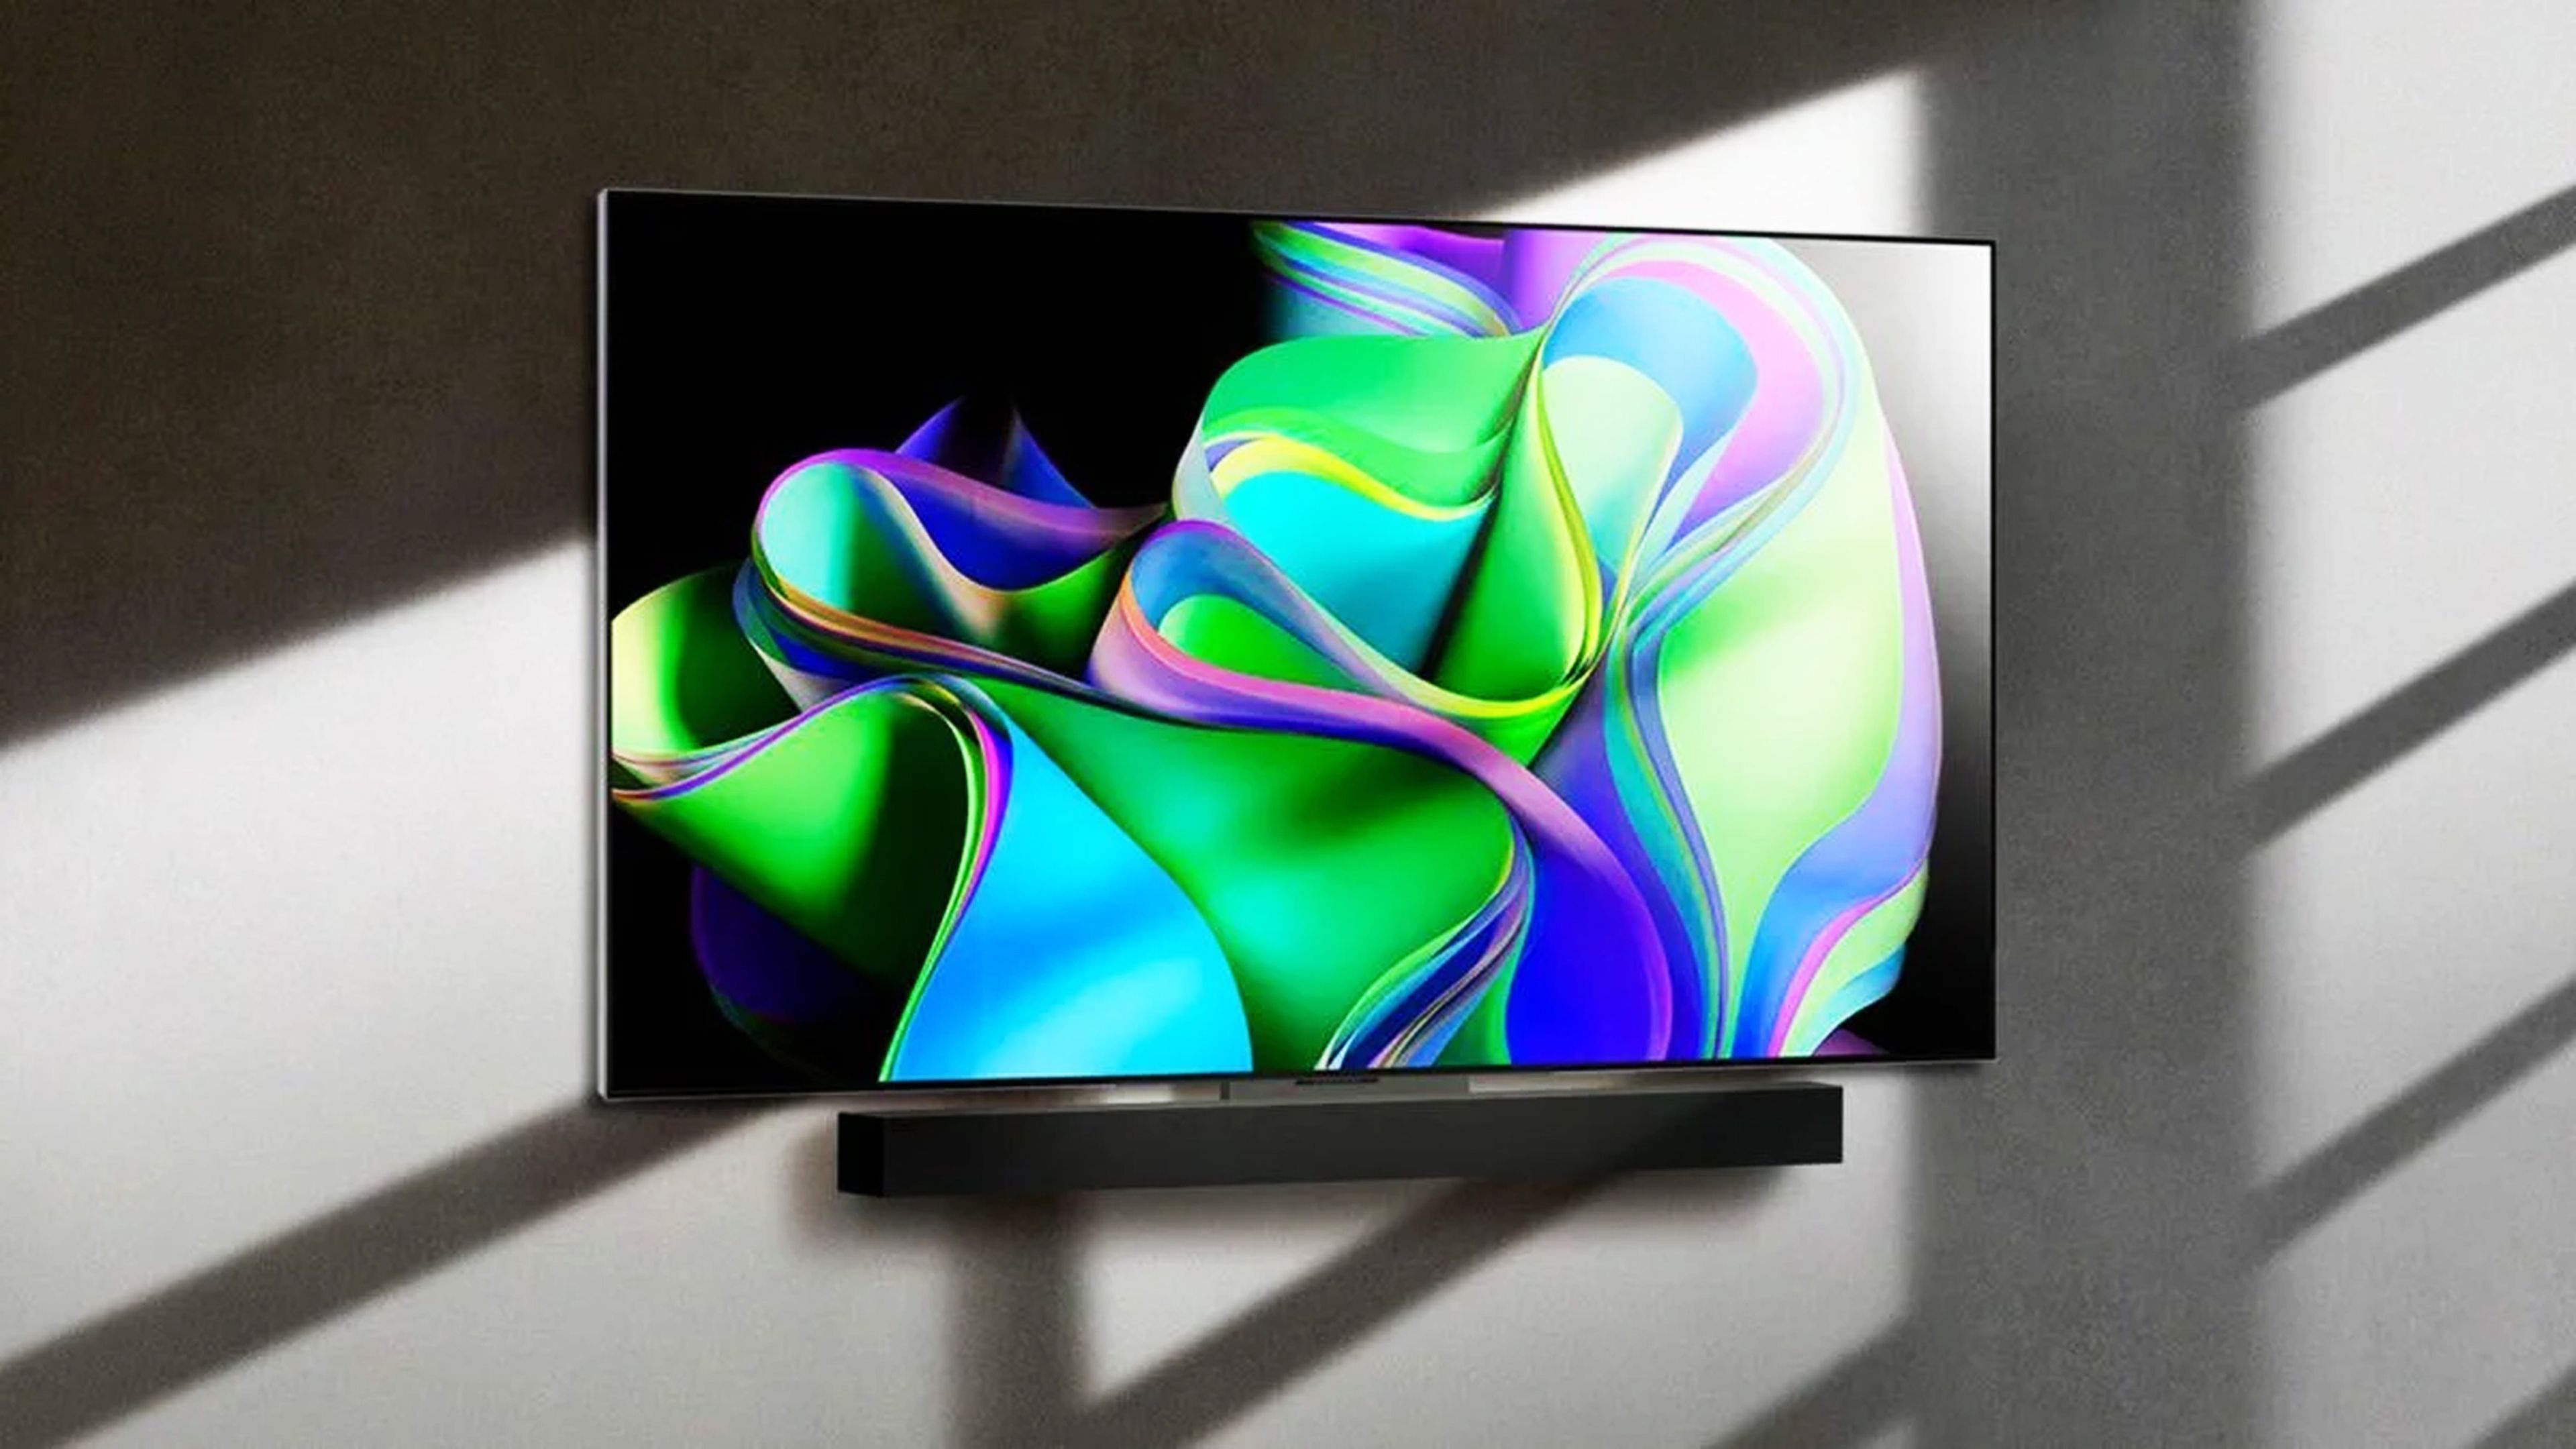 Probamos el nuevo televisor de Sony con pantalla OLED y tasa de refresco a  120 Hz - LA NACION